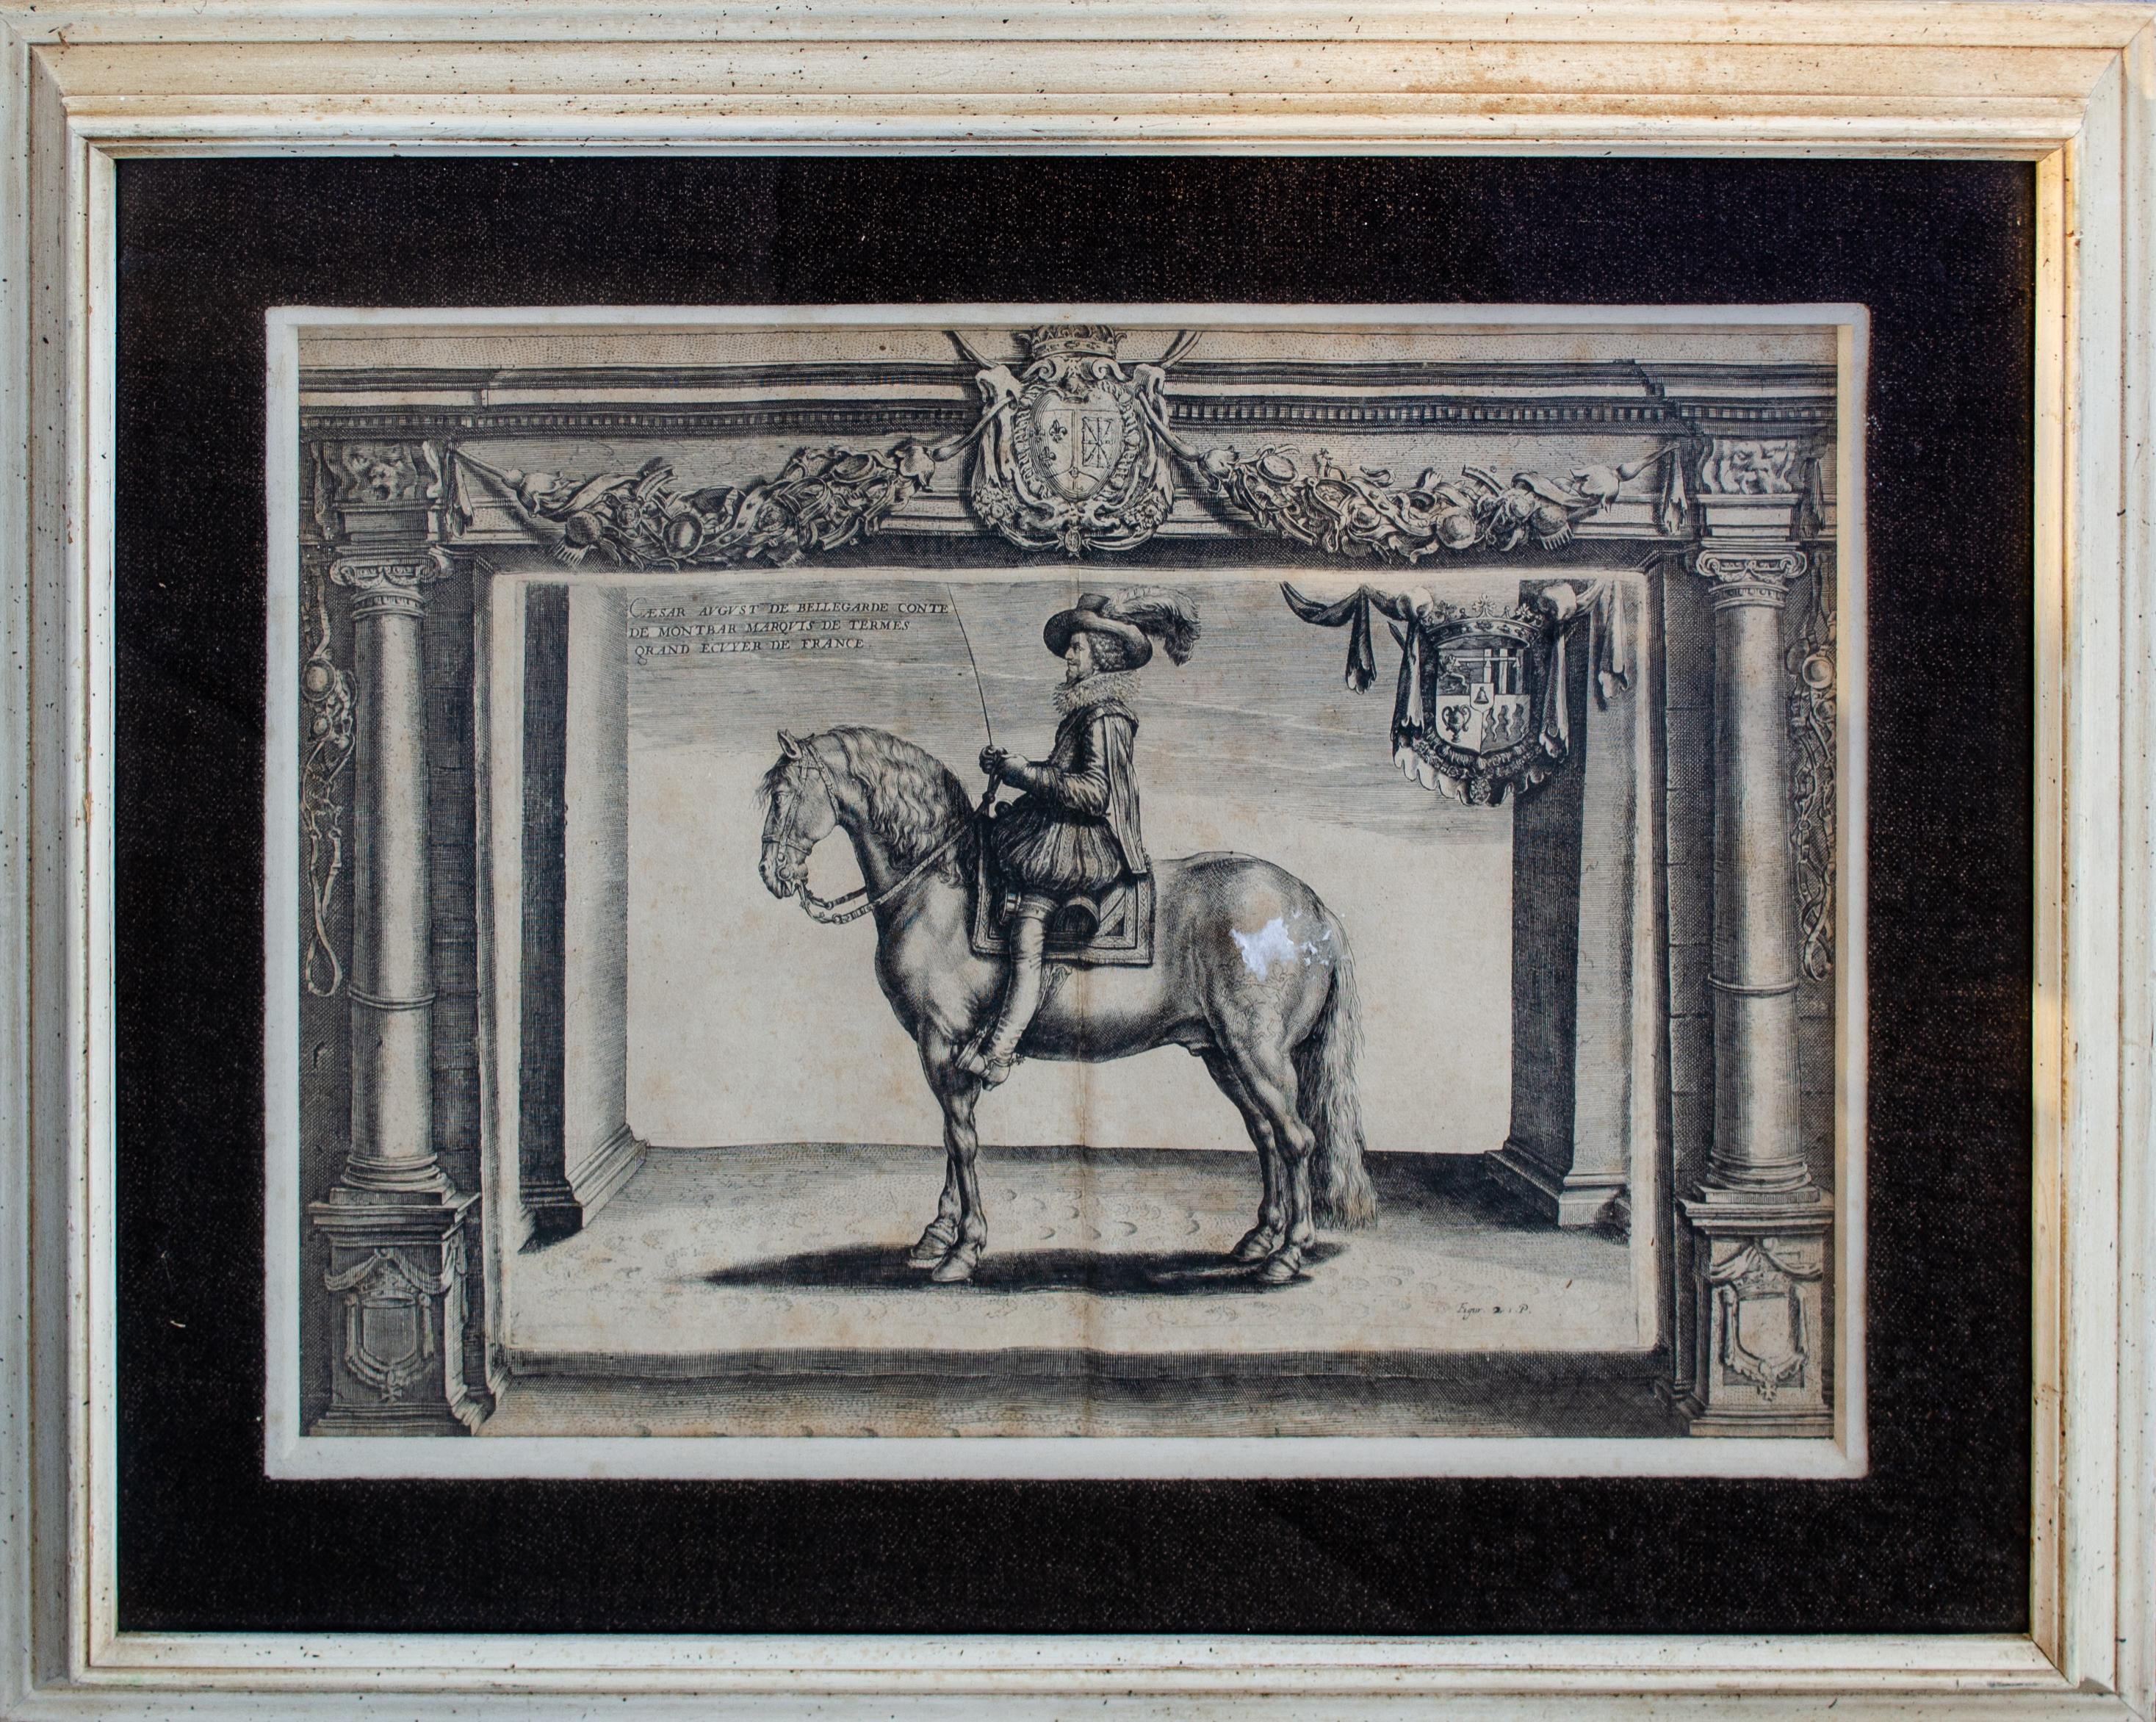 Le comte de Montbar, célèbre cavalier français, gravure de Crispin de Passe - Print de Crispin de Passe II